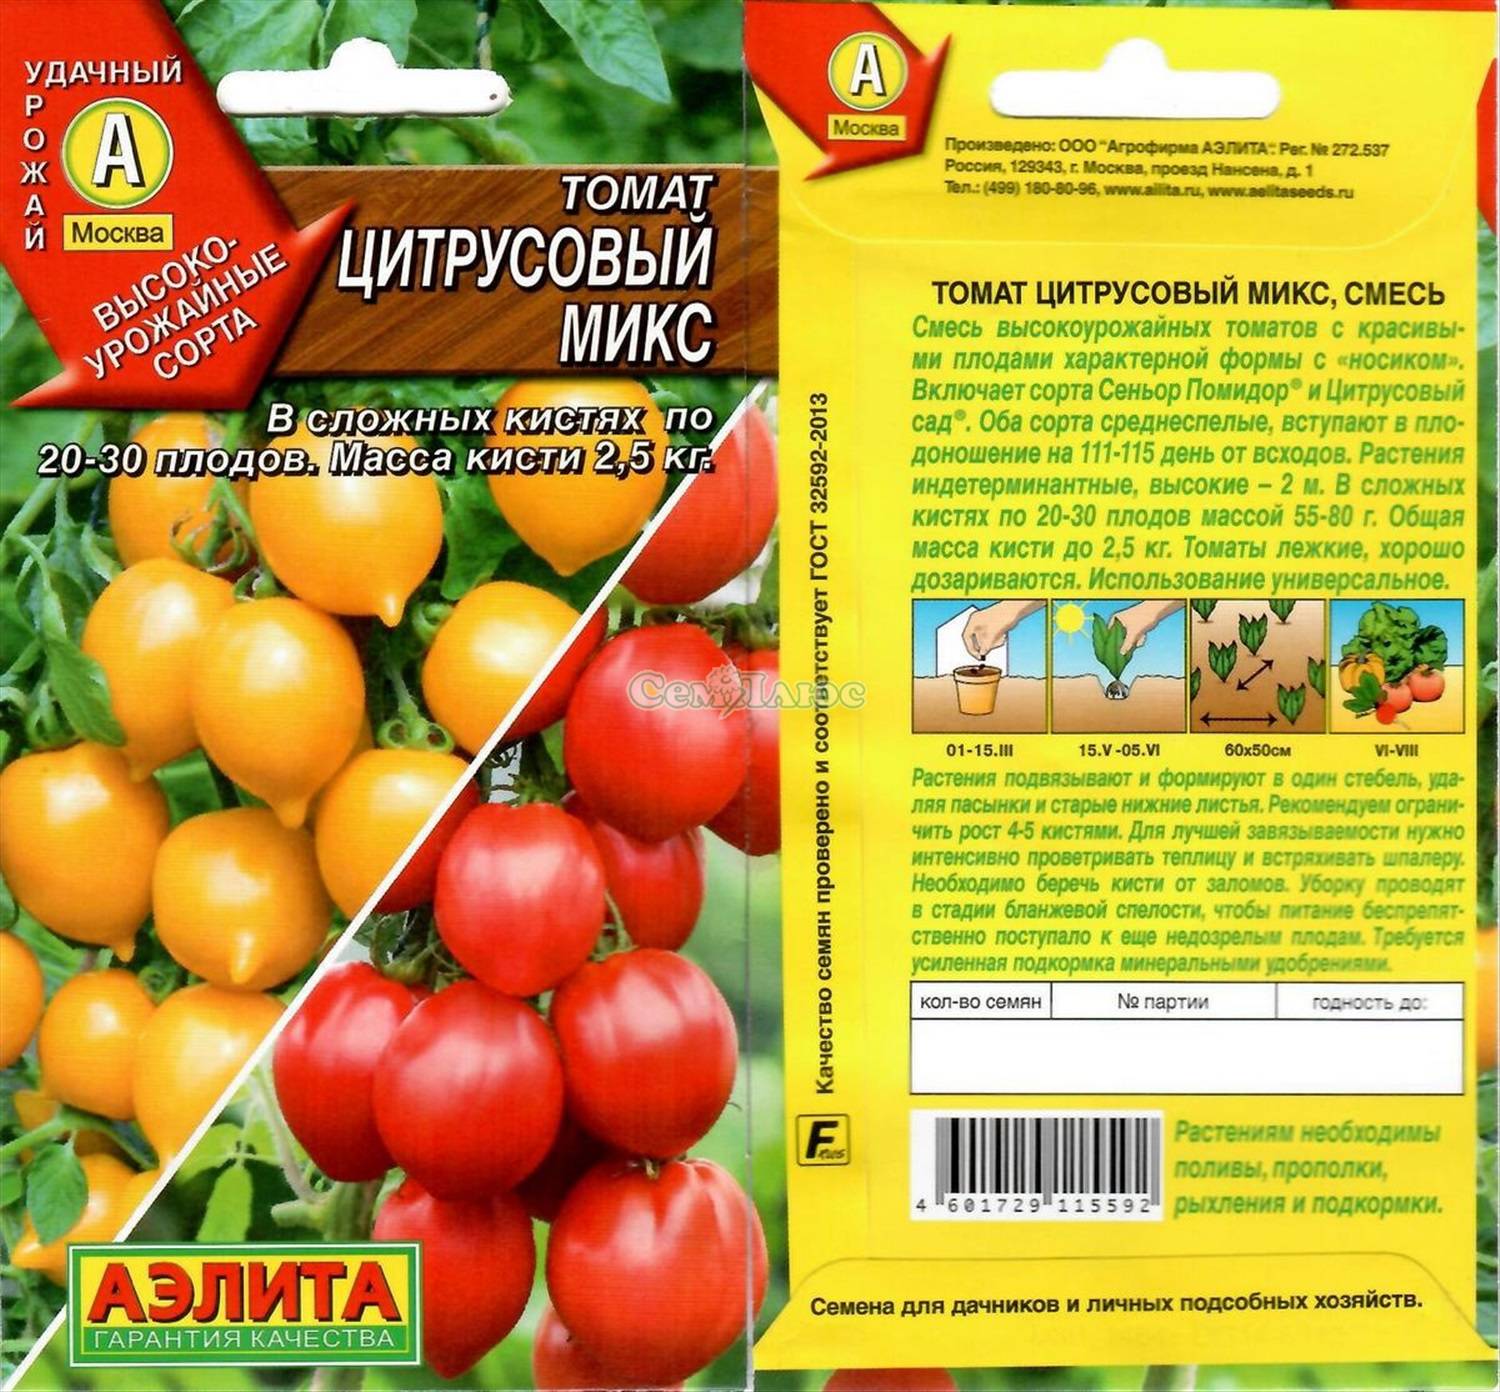 Описание среднеспелого томата рокер и правила выращивания сорта рассадным методом